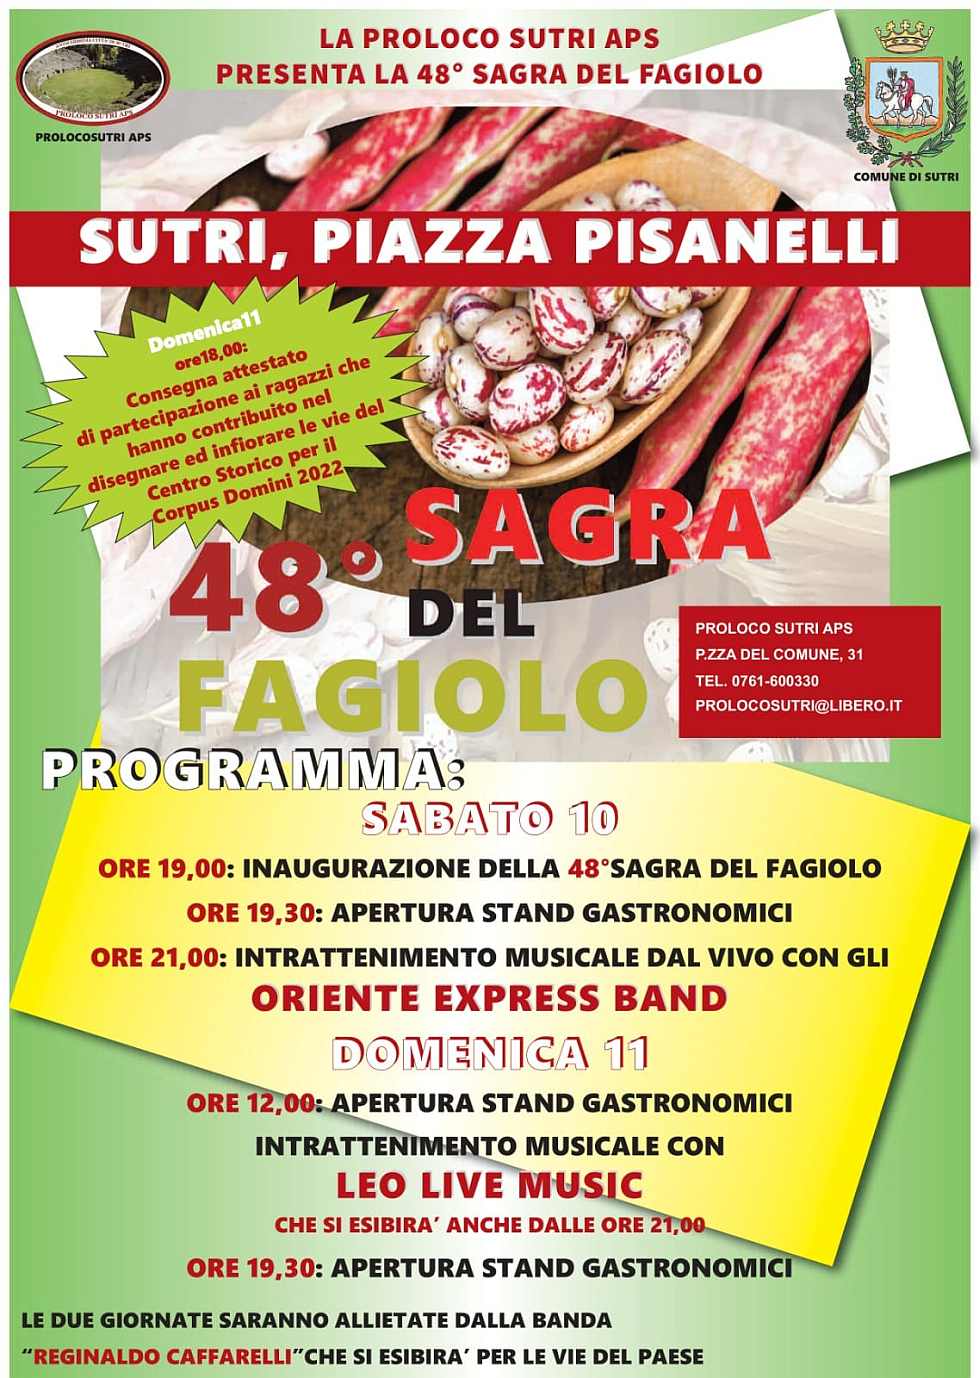 Sutri (VT) 
"48^ Sagra del Fagiolo"
10-11 Settembre 2022 